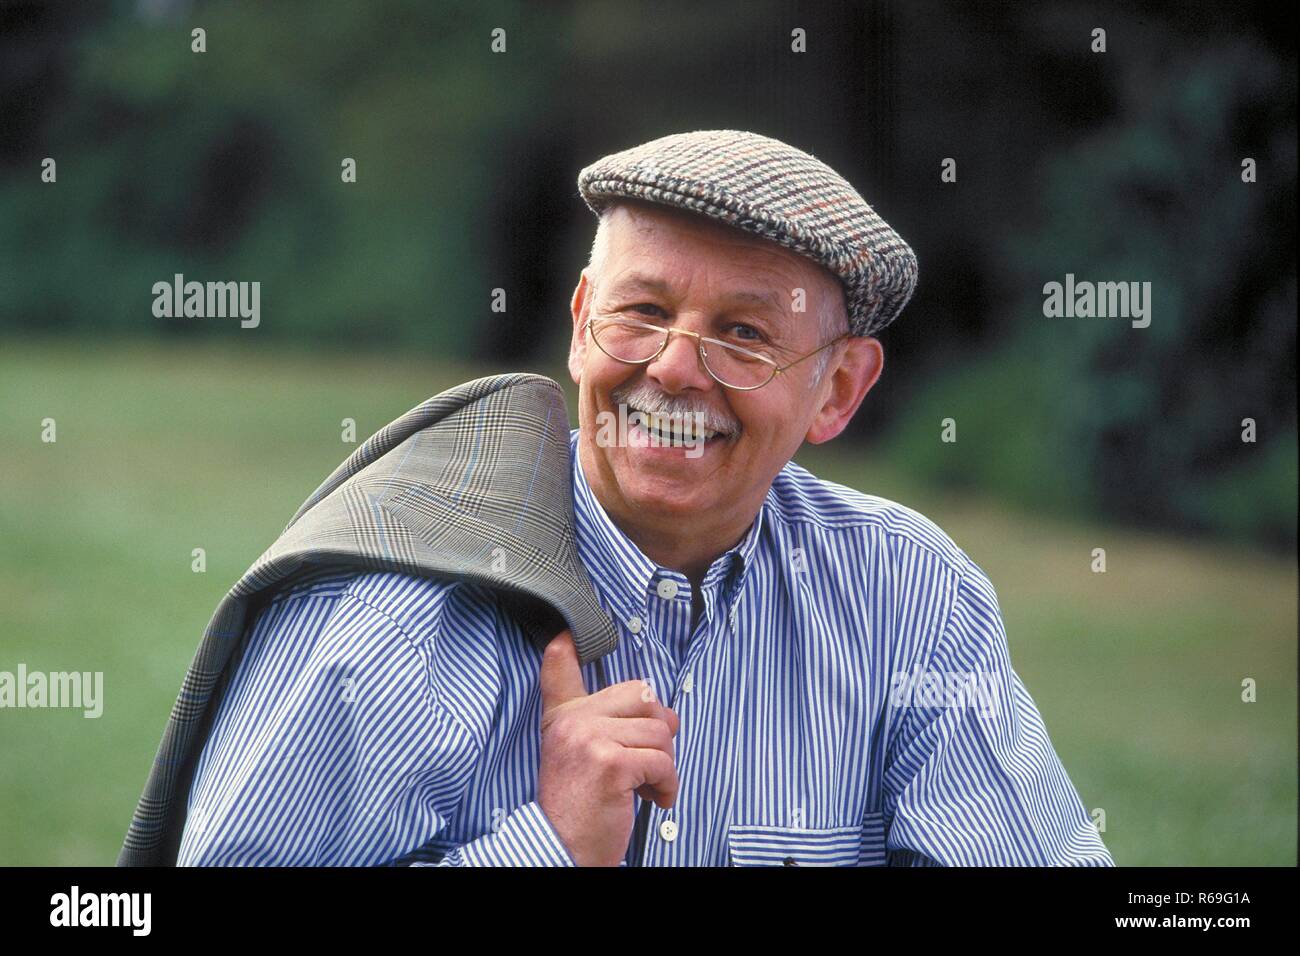 Portrait, Outdoor, laechelnder Schnauzbart mit Senior, ca 75 Jahre alt, bekleidet blau mit-gestreiftem Schiebermuetze Hemd, weiss und brille Banque D'Images